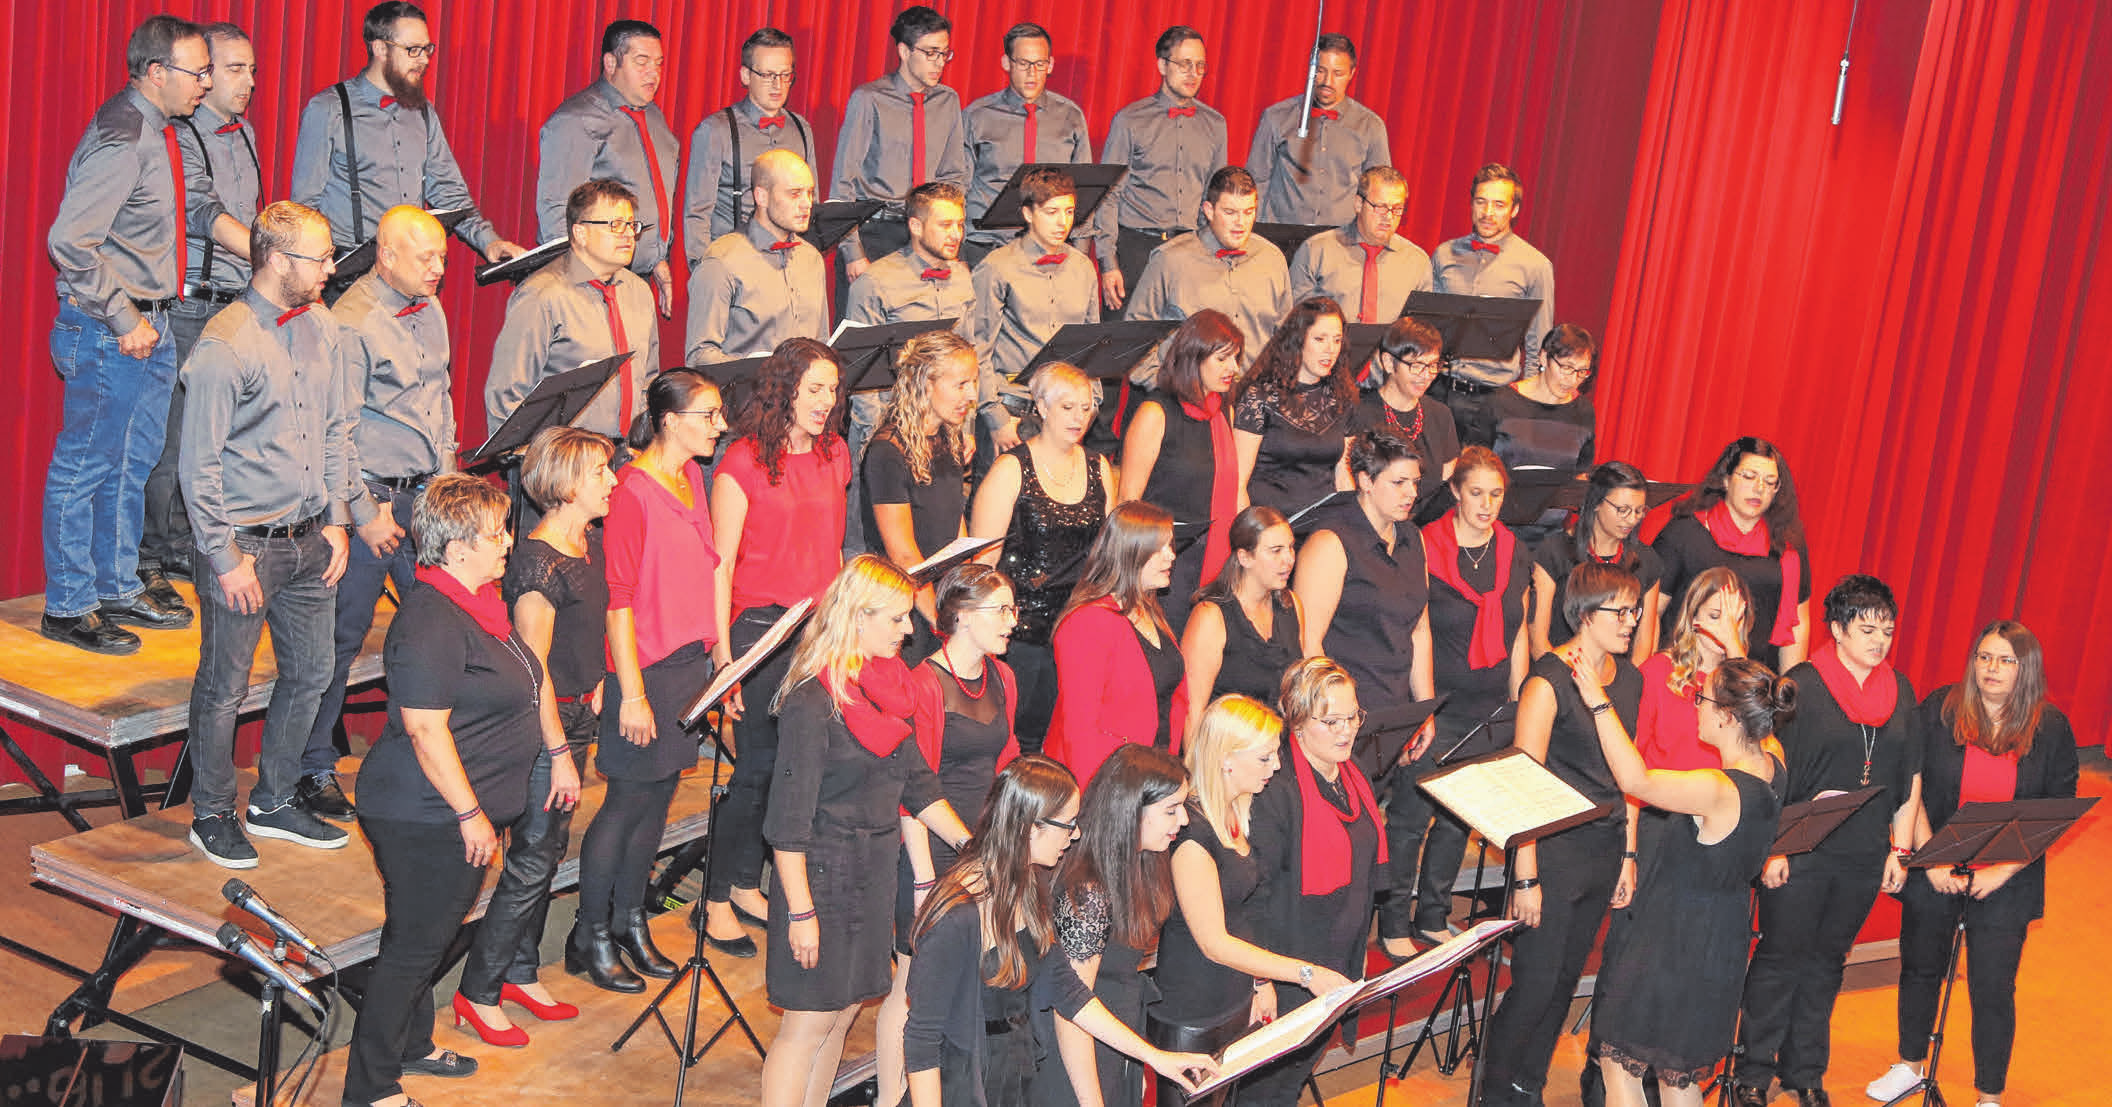 Chor Fatal feiert mit erstklassigen Chören das bekannte Chorfestival in Neufra